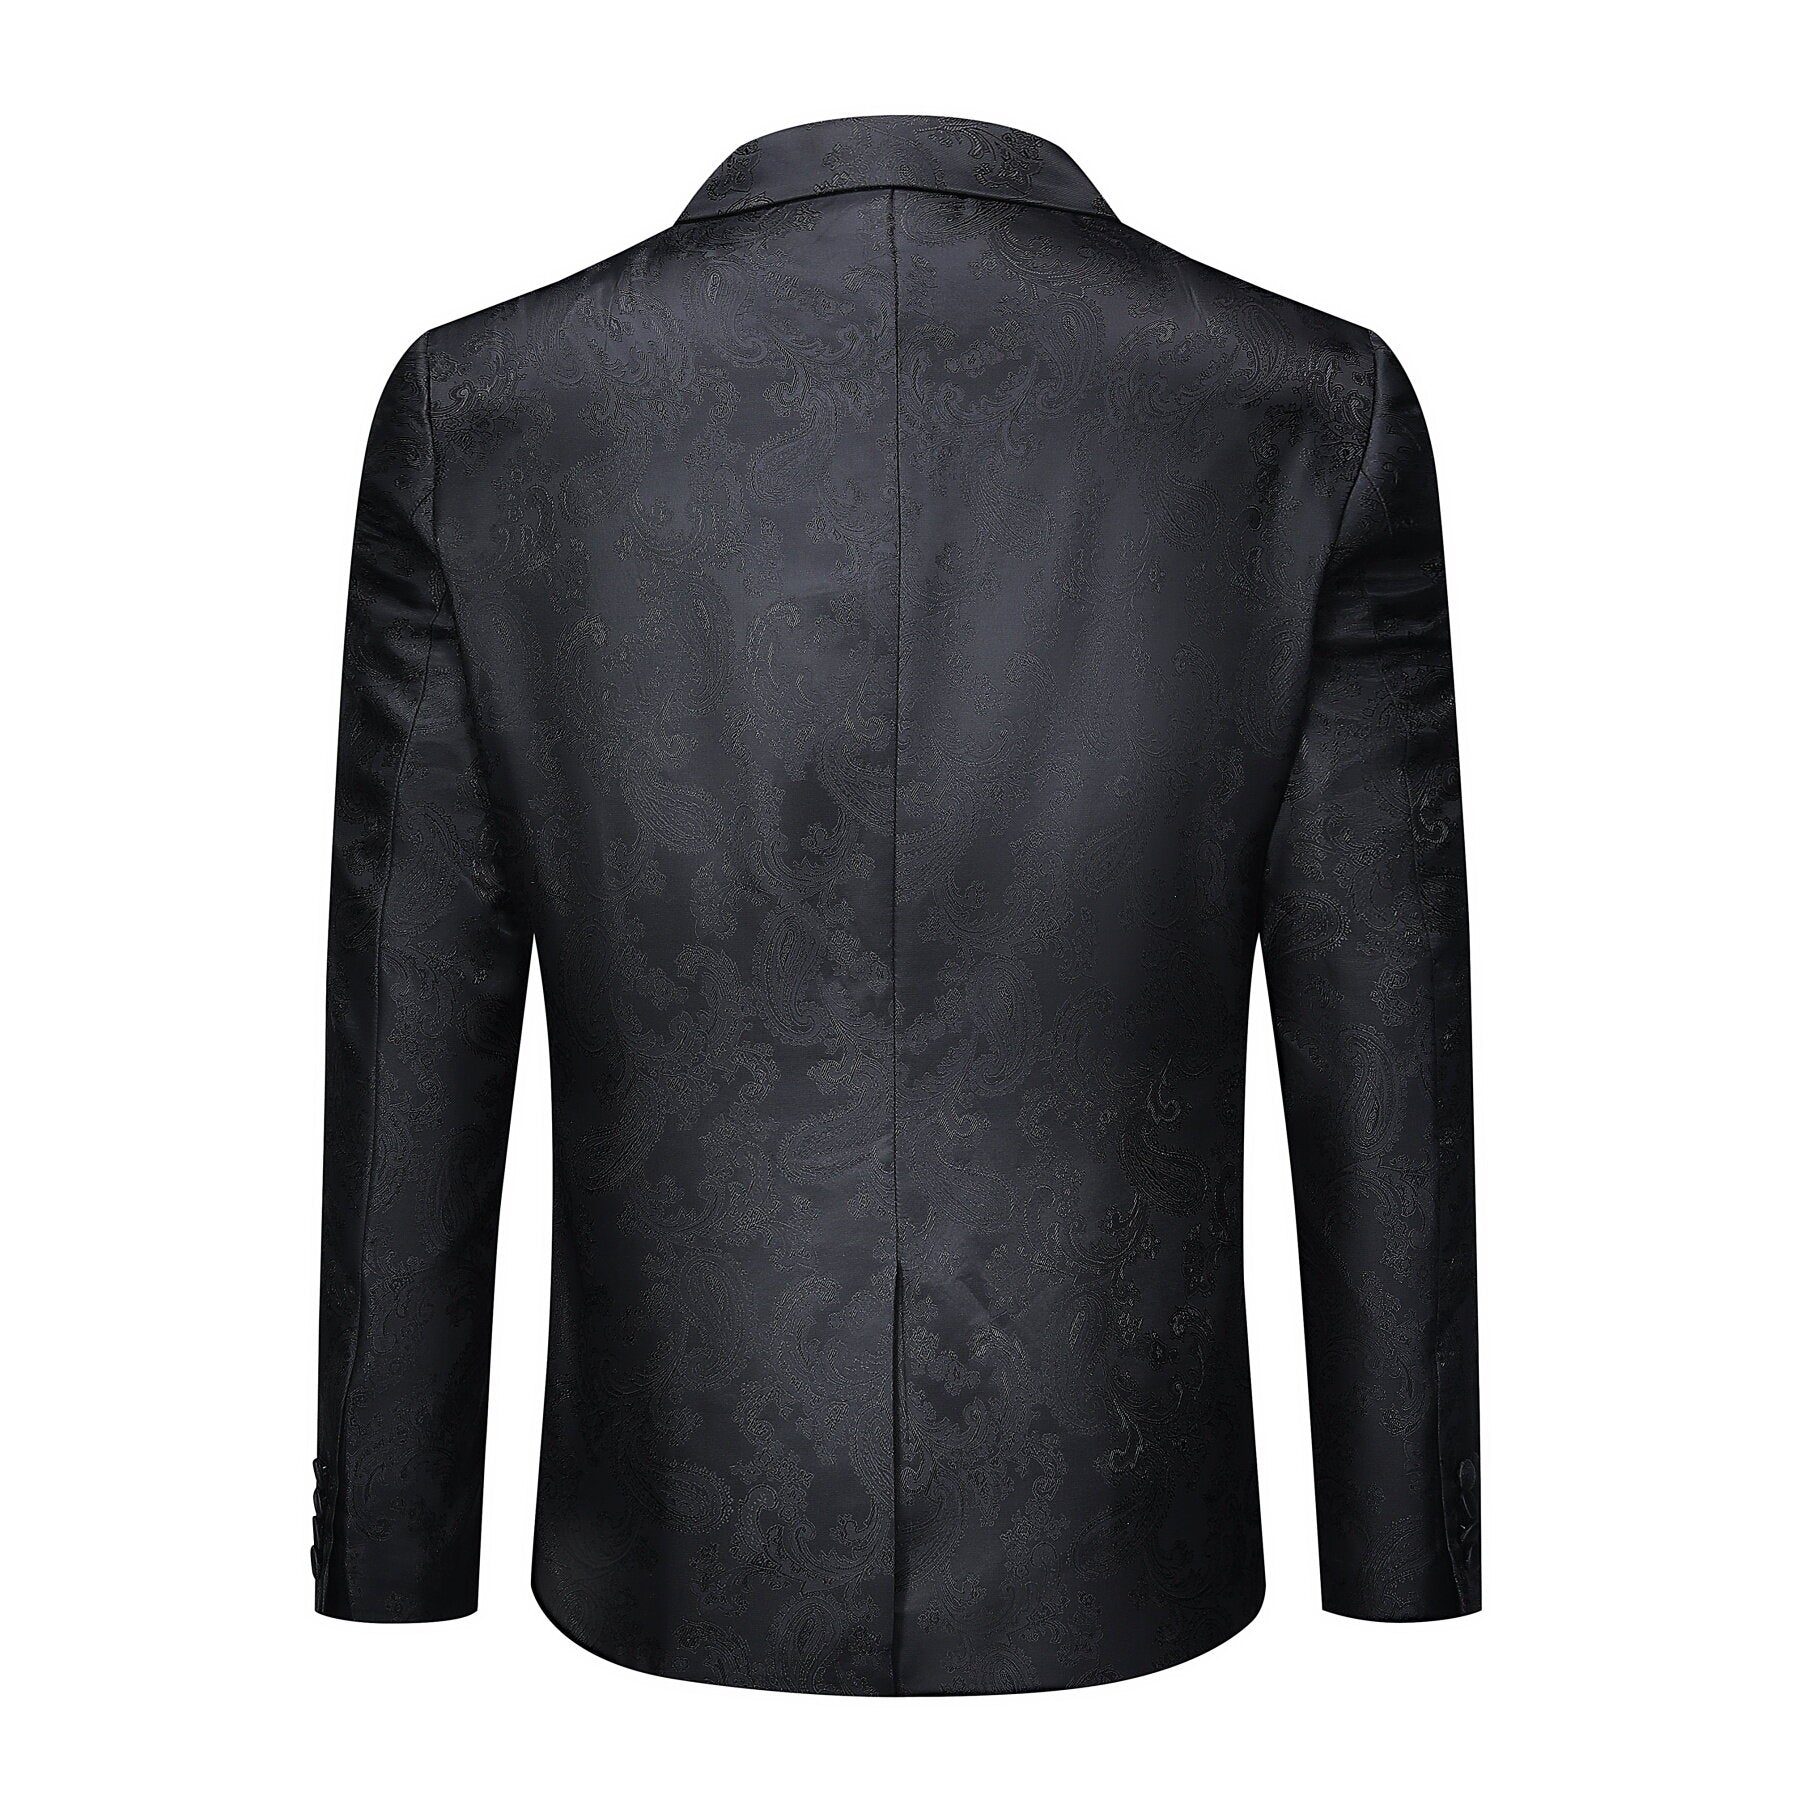 2-Piece Slim Fit Paisley Fashion Suit Black